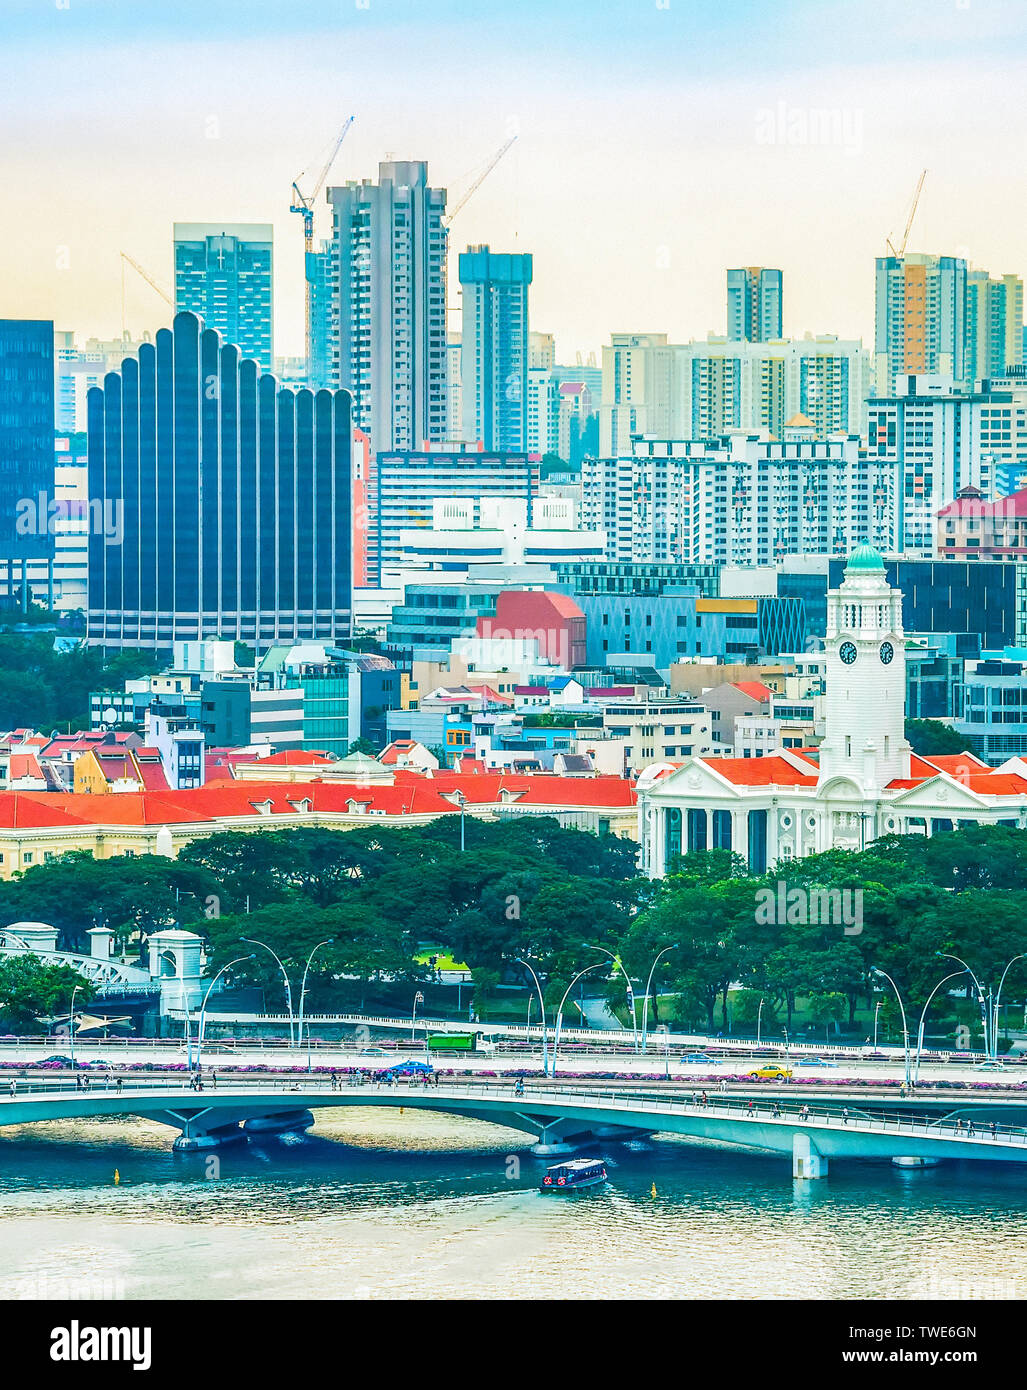 Singapur Metropole Stadtbild, touristischen Boote von grünen Quay, Brücken und den Bau von modernen Viertel im Hintergrund Stockfoto